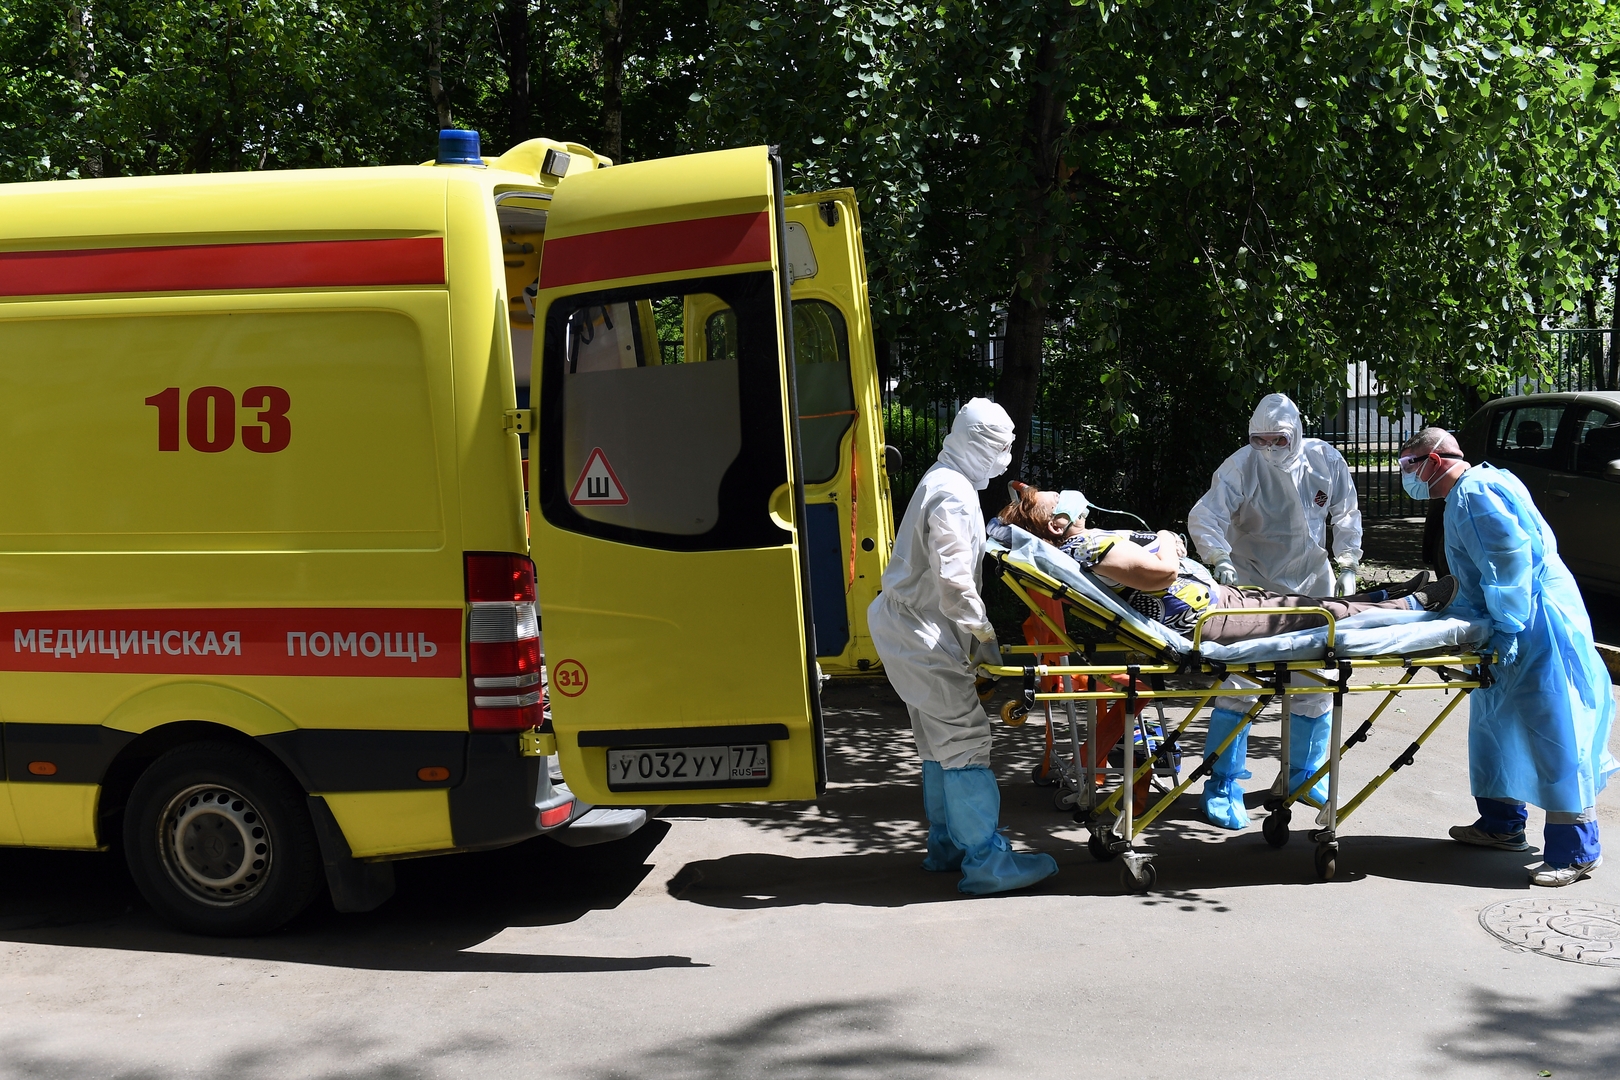 تسجيل 53 وفاة جديدة بكورونا في موسكو